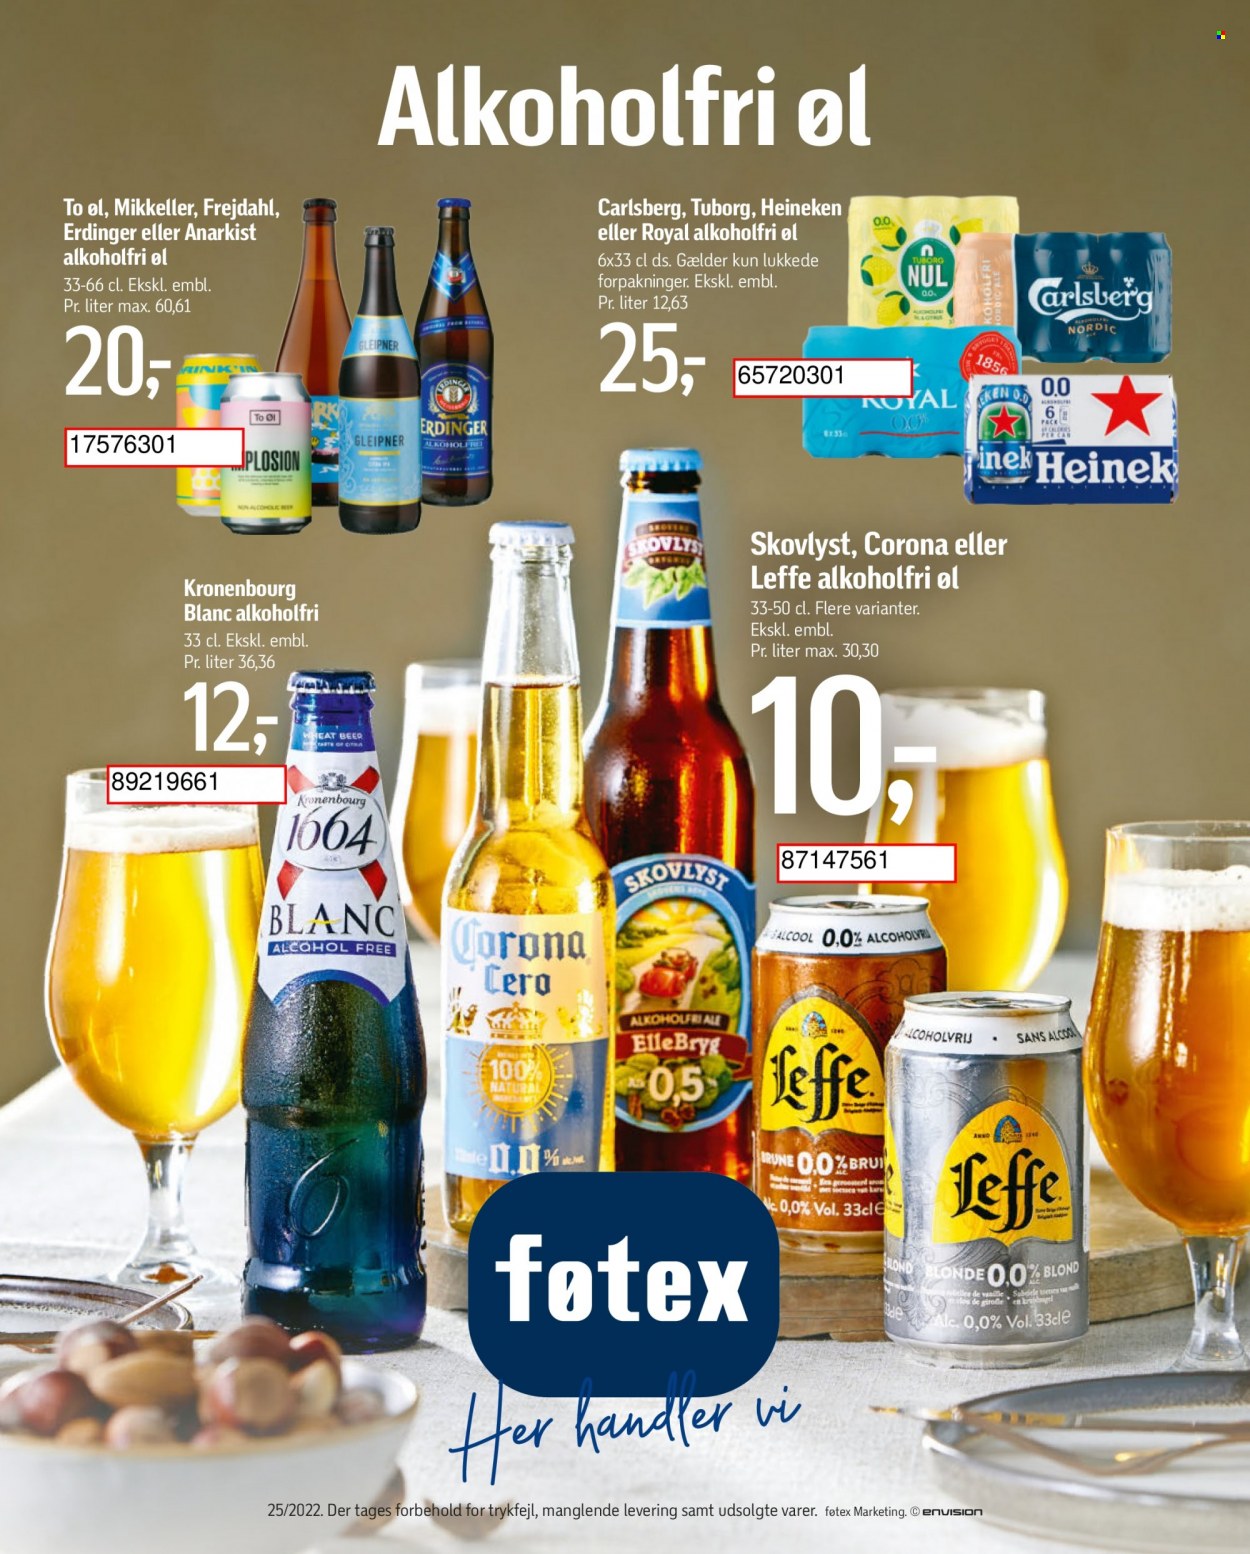 thumbnail - føtex tilbud  - 17.6.2022 - 30.6.2022 - tilbudsprodukter - alkoholfri øl, Carlsberg, Ellebryg, Heineken, Leffe, Tuborg, øl. Side 8.